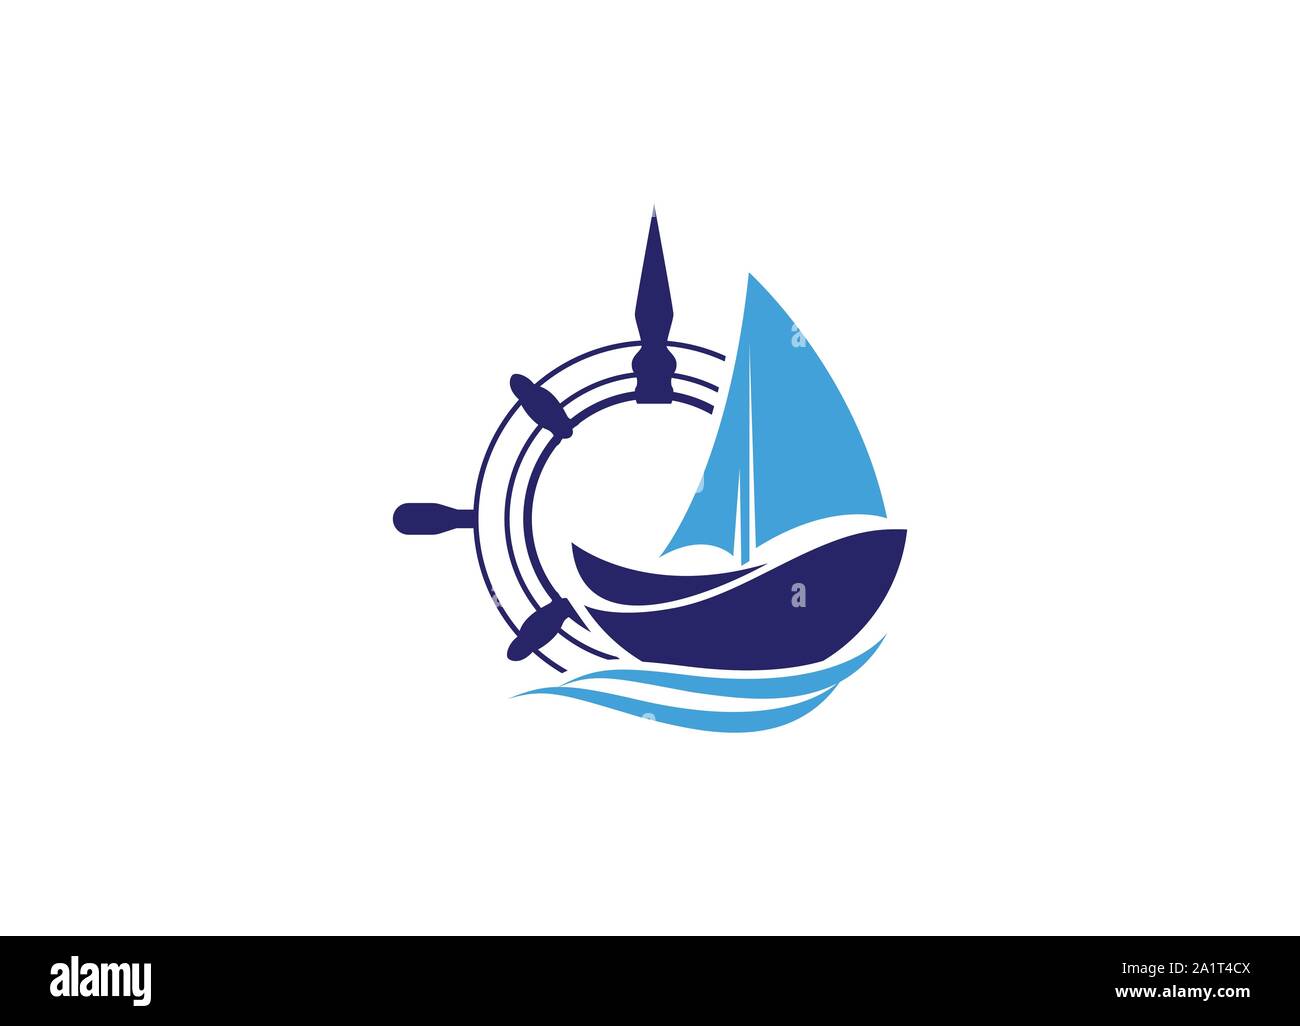 Kreuzfahrtschiff Logo Vorlage Vektor icon Abbildung: Logo Design, Schiff, nautische Segelboot Symbol vektor design, Segelboot Symbol, Stock Vektor